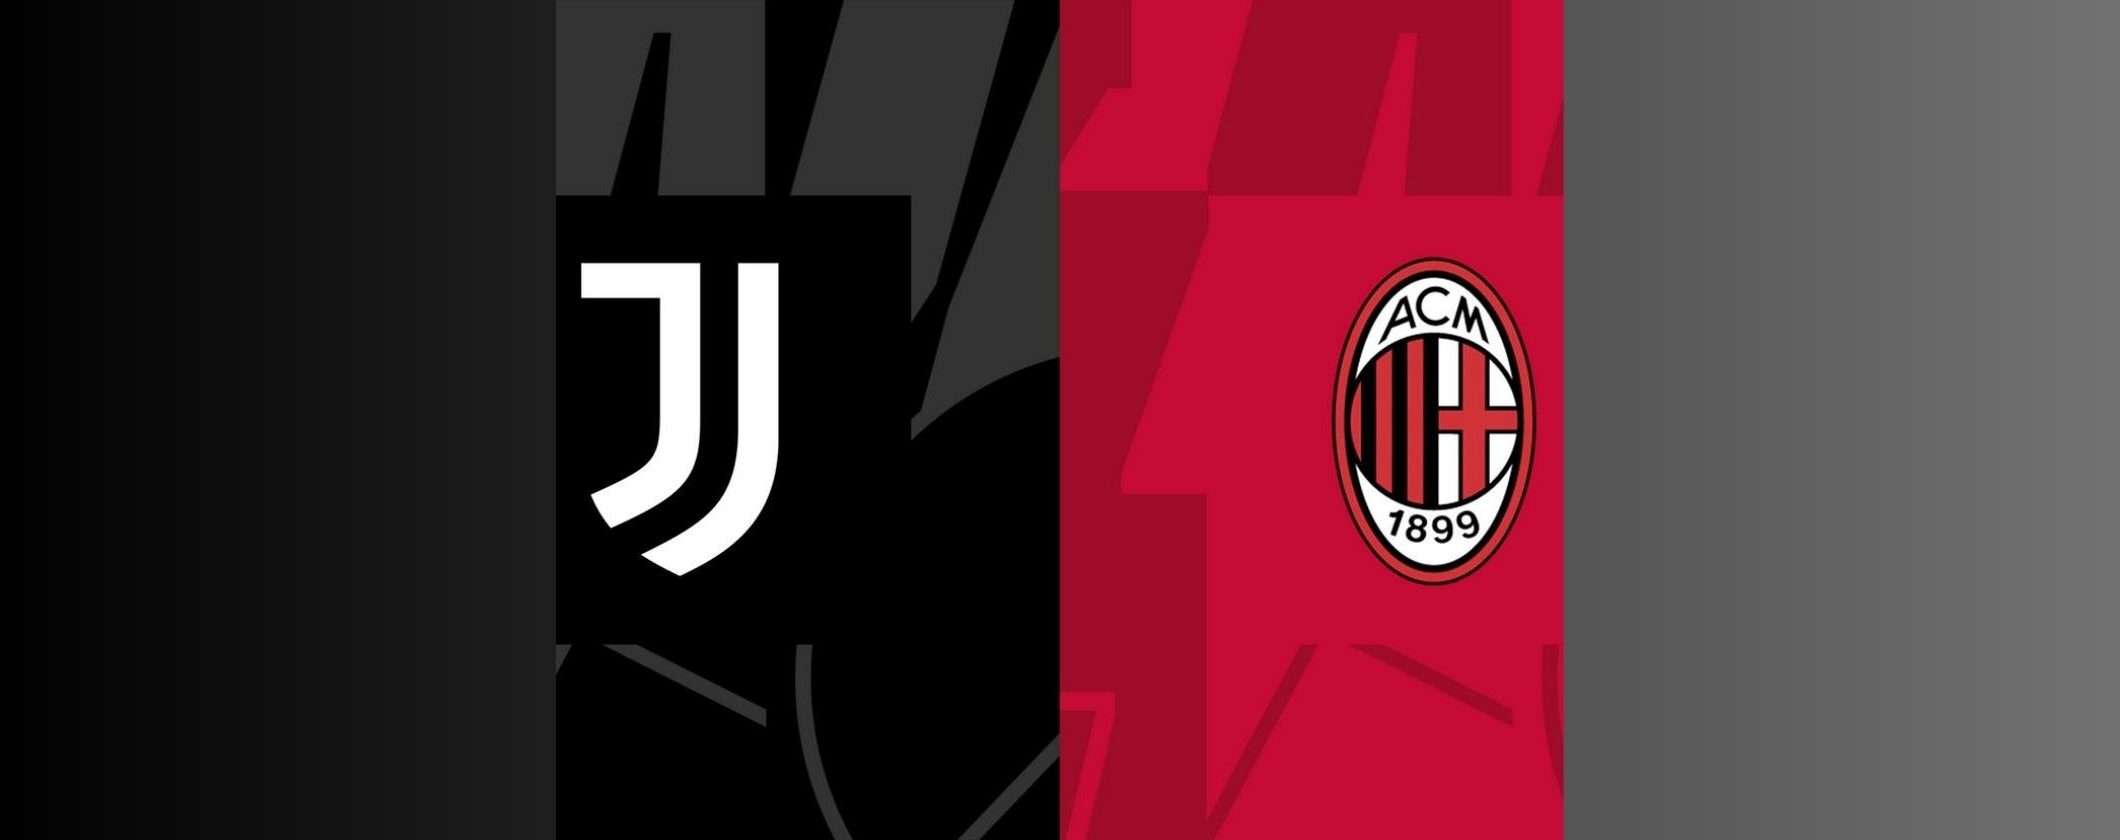 Juventus-Milan: come vedere la partita in diretta streaming